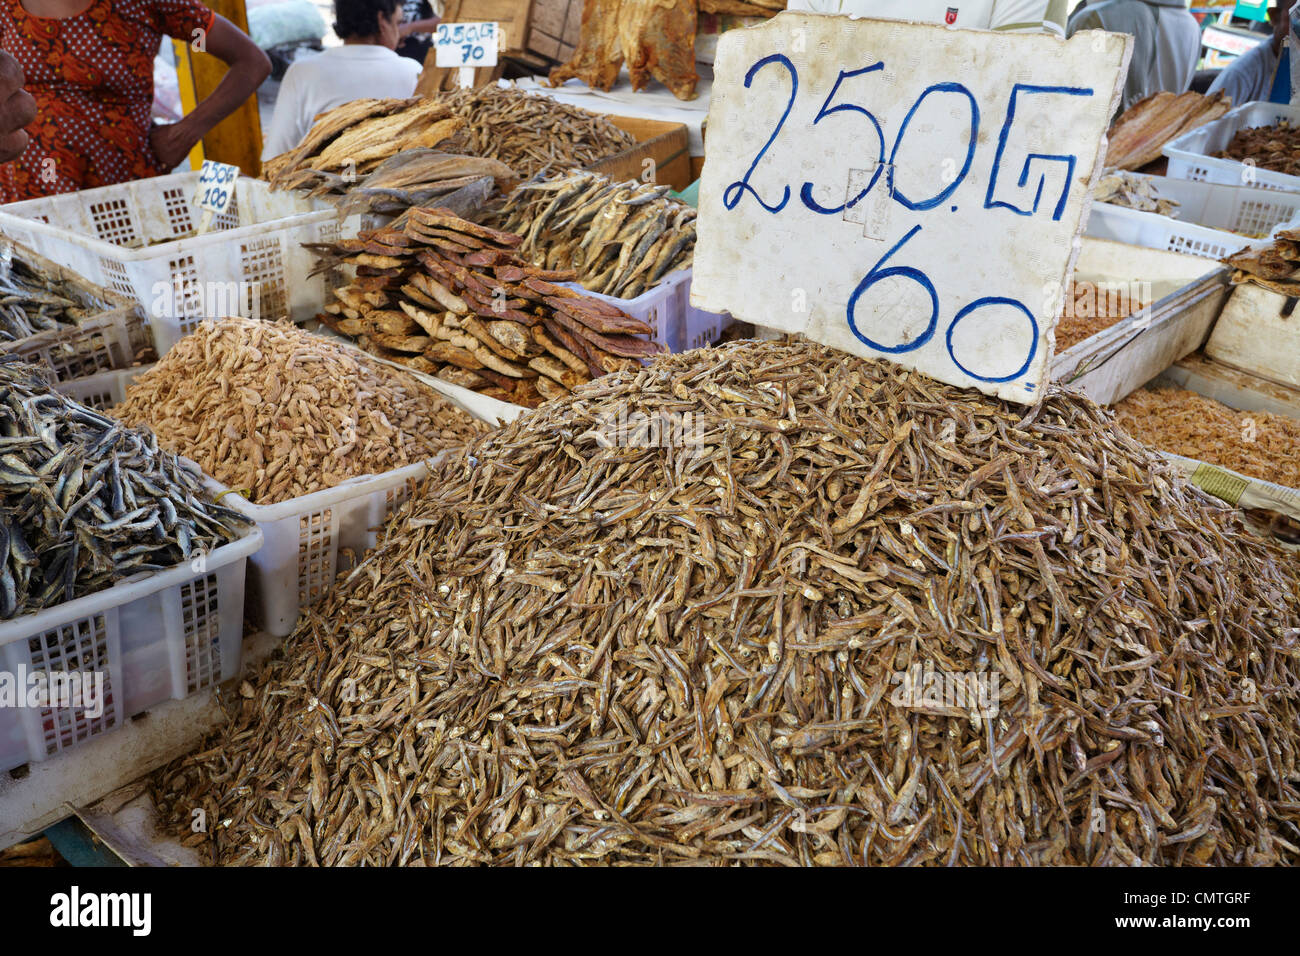 Sri Lanka - Colombo, getrocknet und gesalzen Fisch auf dem Markt Stockfoto